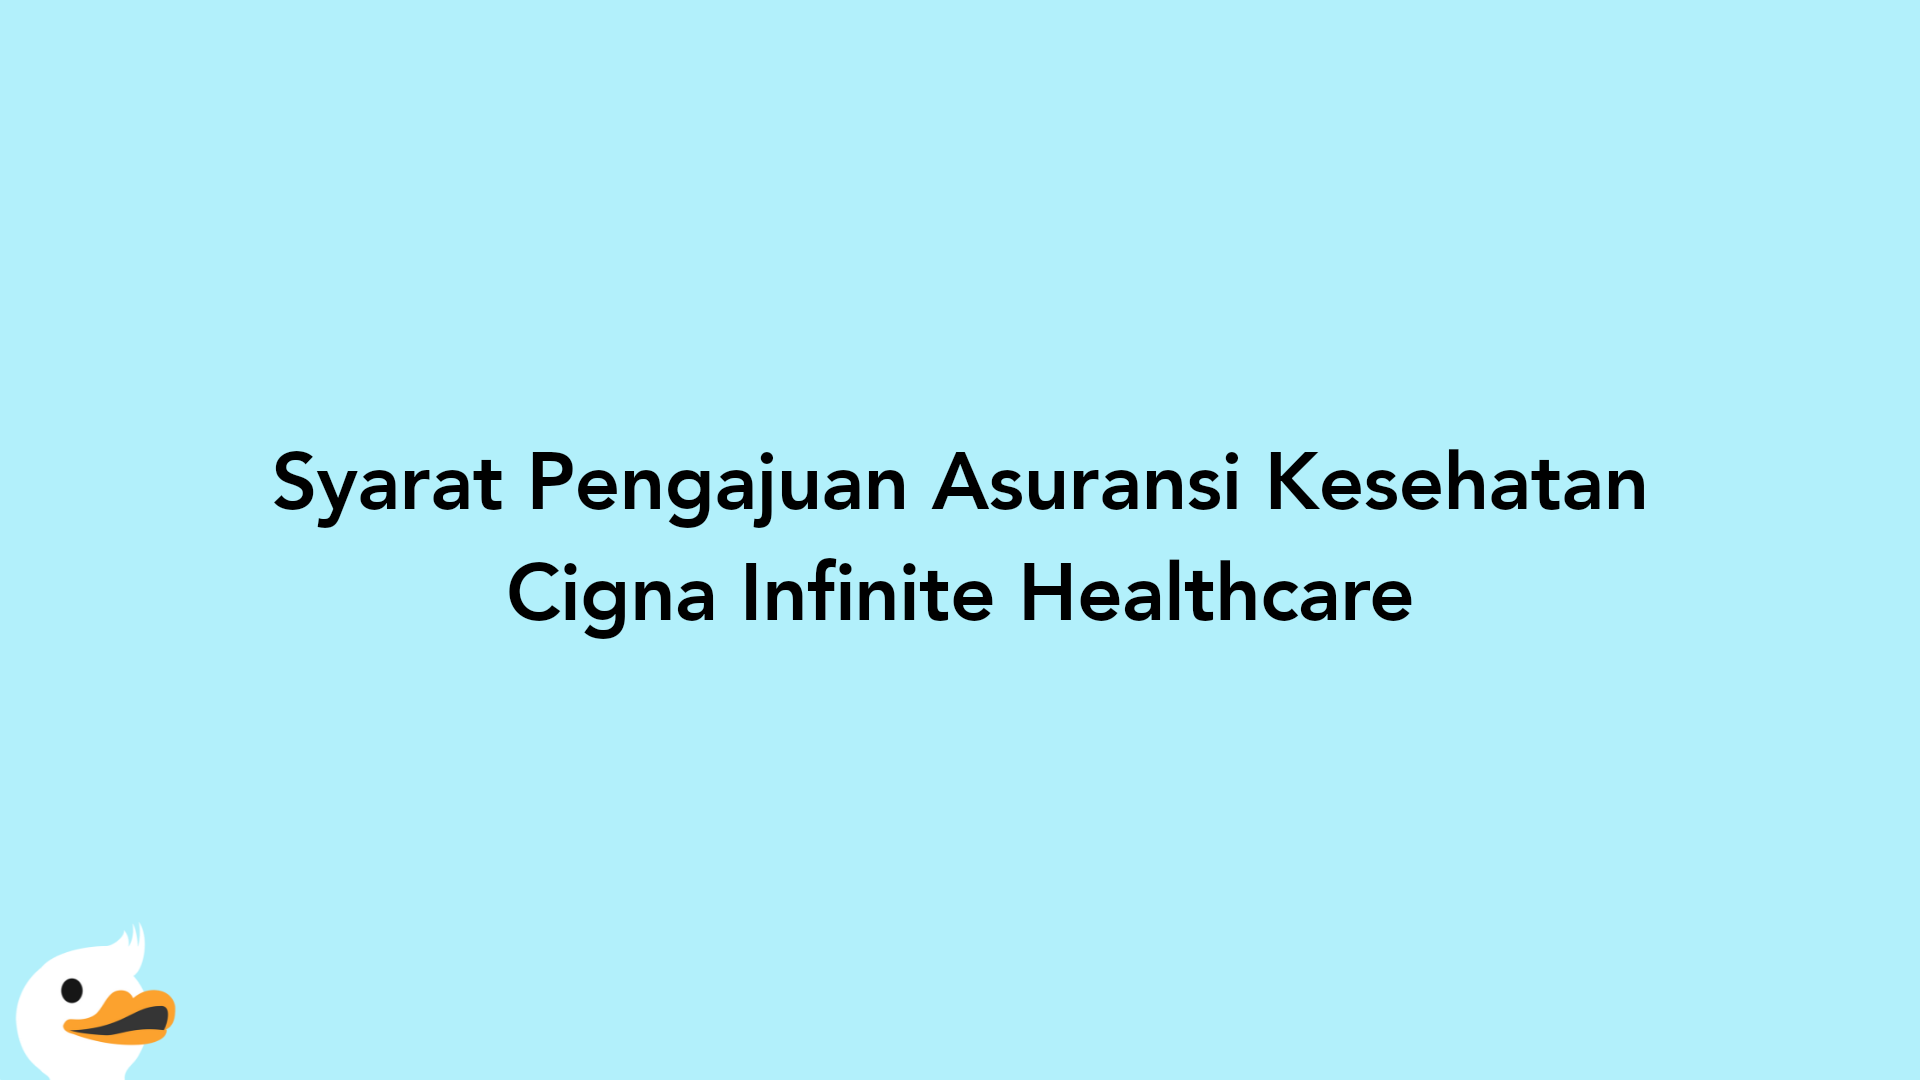 Syarat Pengajuan Asuransi Kesehatan Cigna Infinite Healthcare